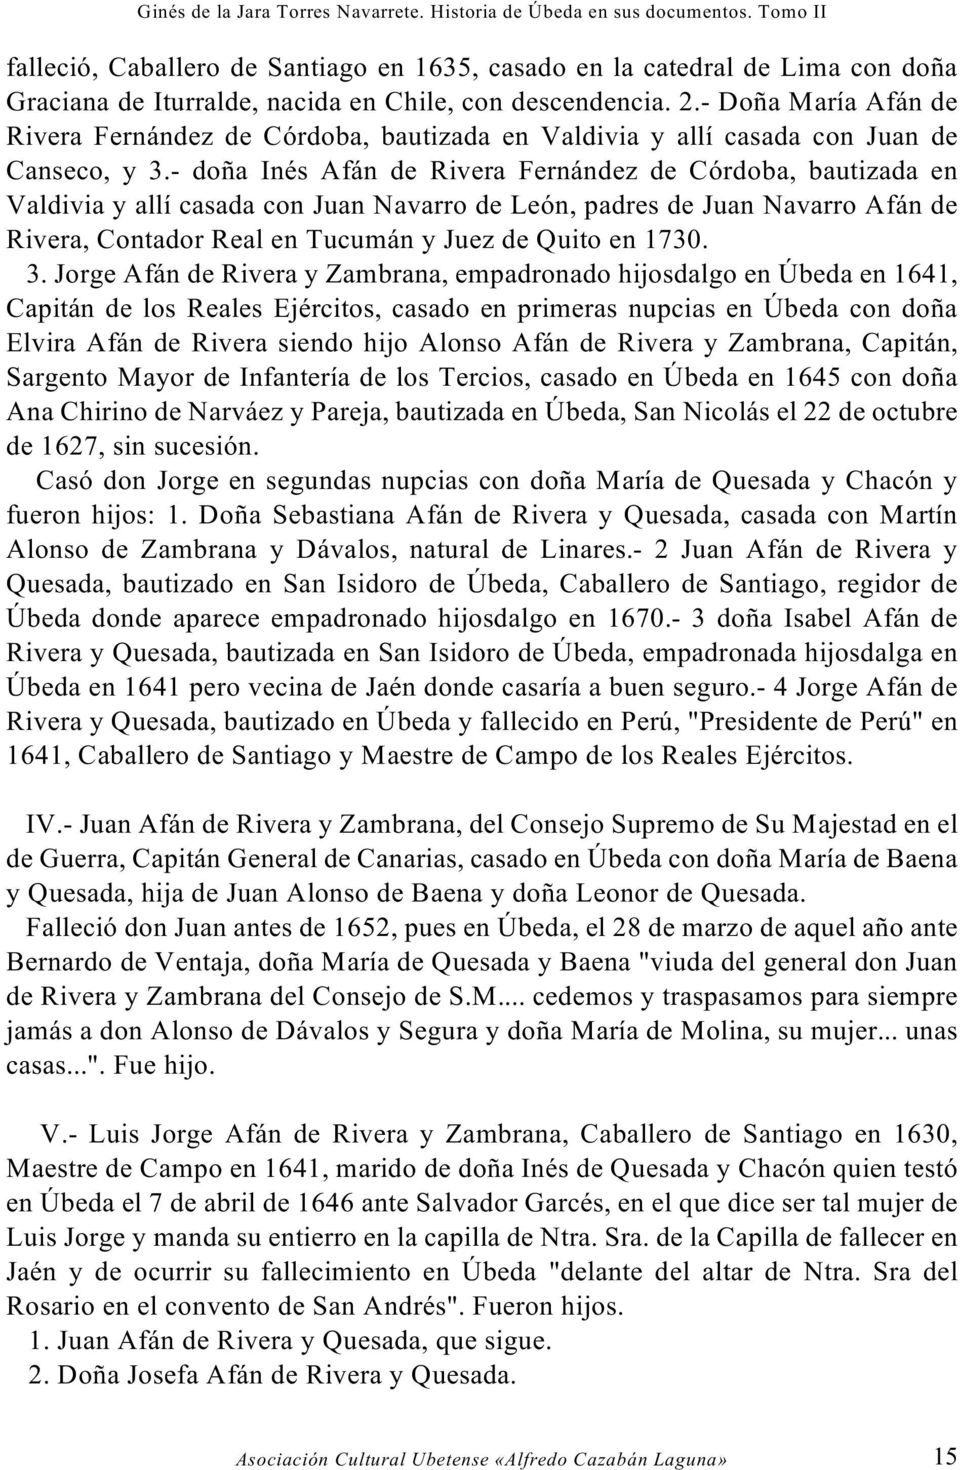 - doña Inés Afán de Rivera Fernández de Córdoba, bautizada en Valdivia y allí casada con Juan Navarro de León, padres de Juan Navarro Afán de Rivera, Contador Real en Tucumán y Juez de Quito en 1730.